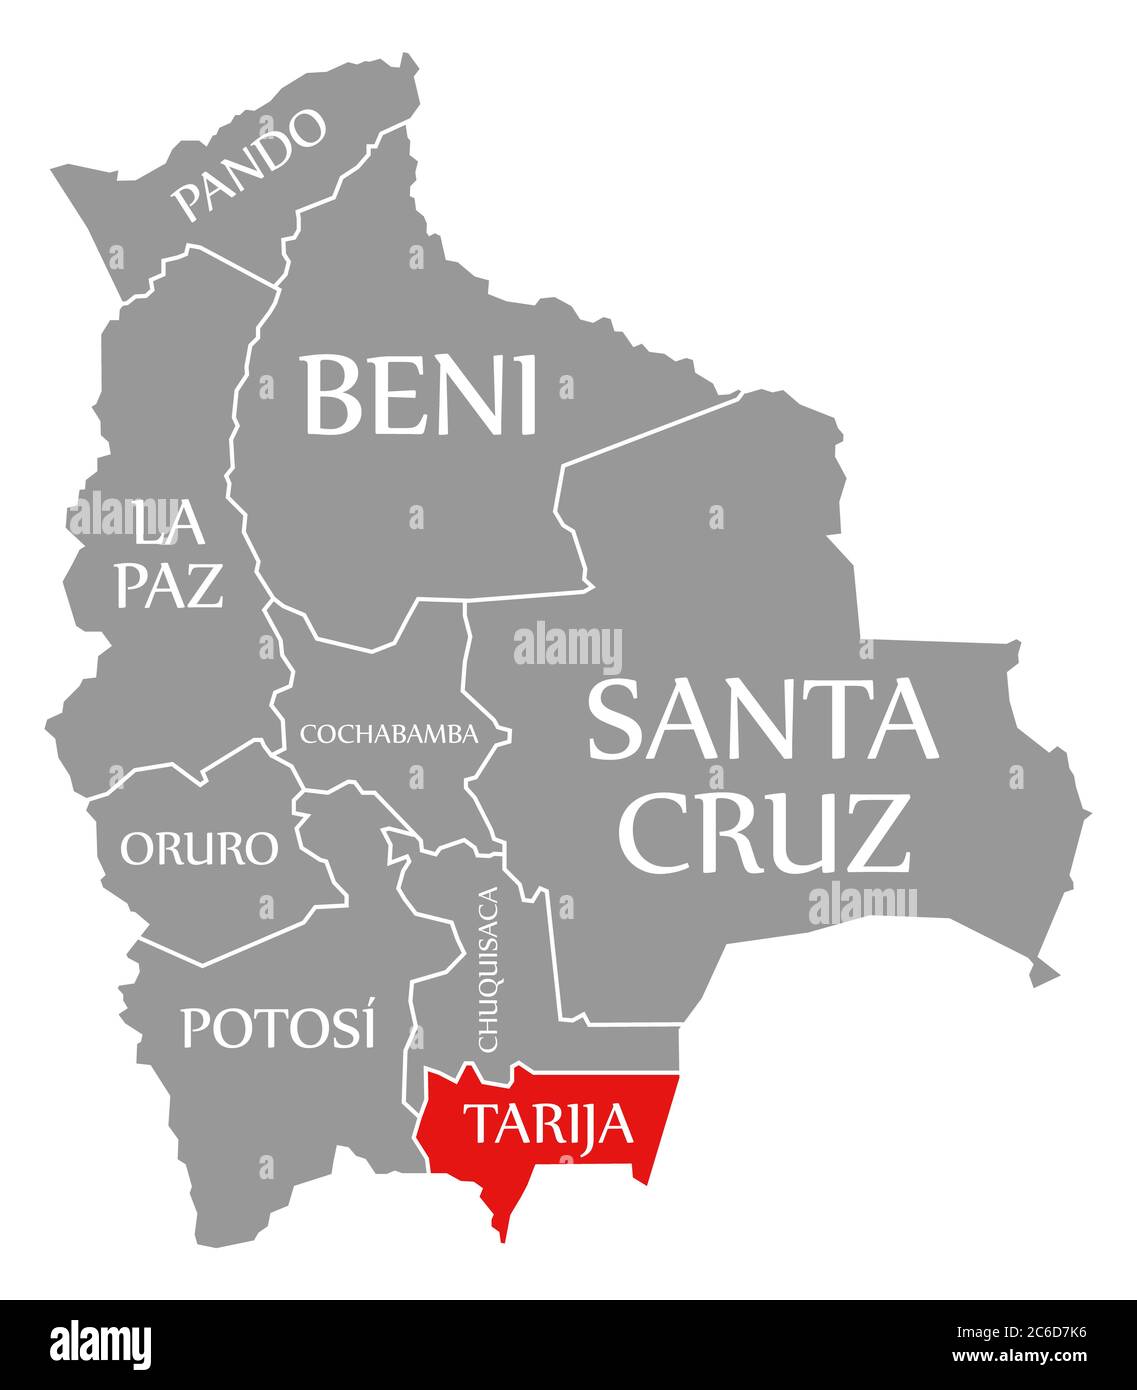 Tarija rouge mis en évidence sur la carte de la Bolivie Banque D'Images